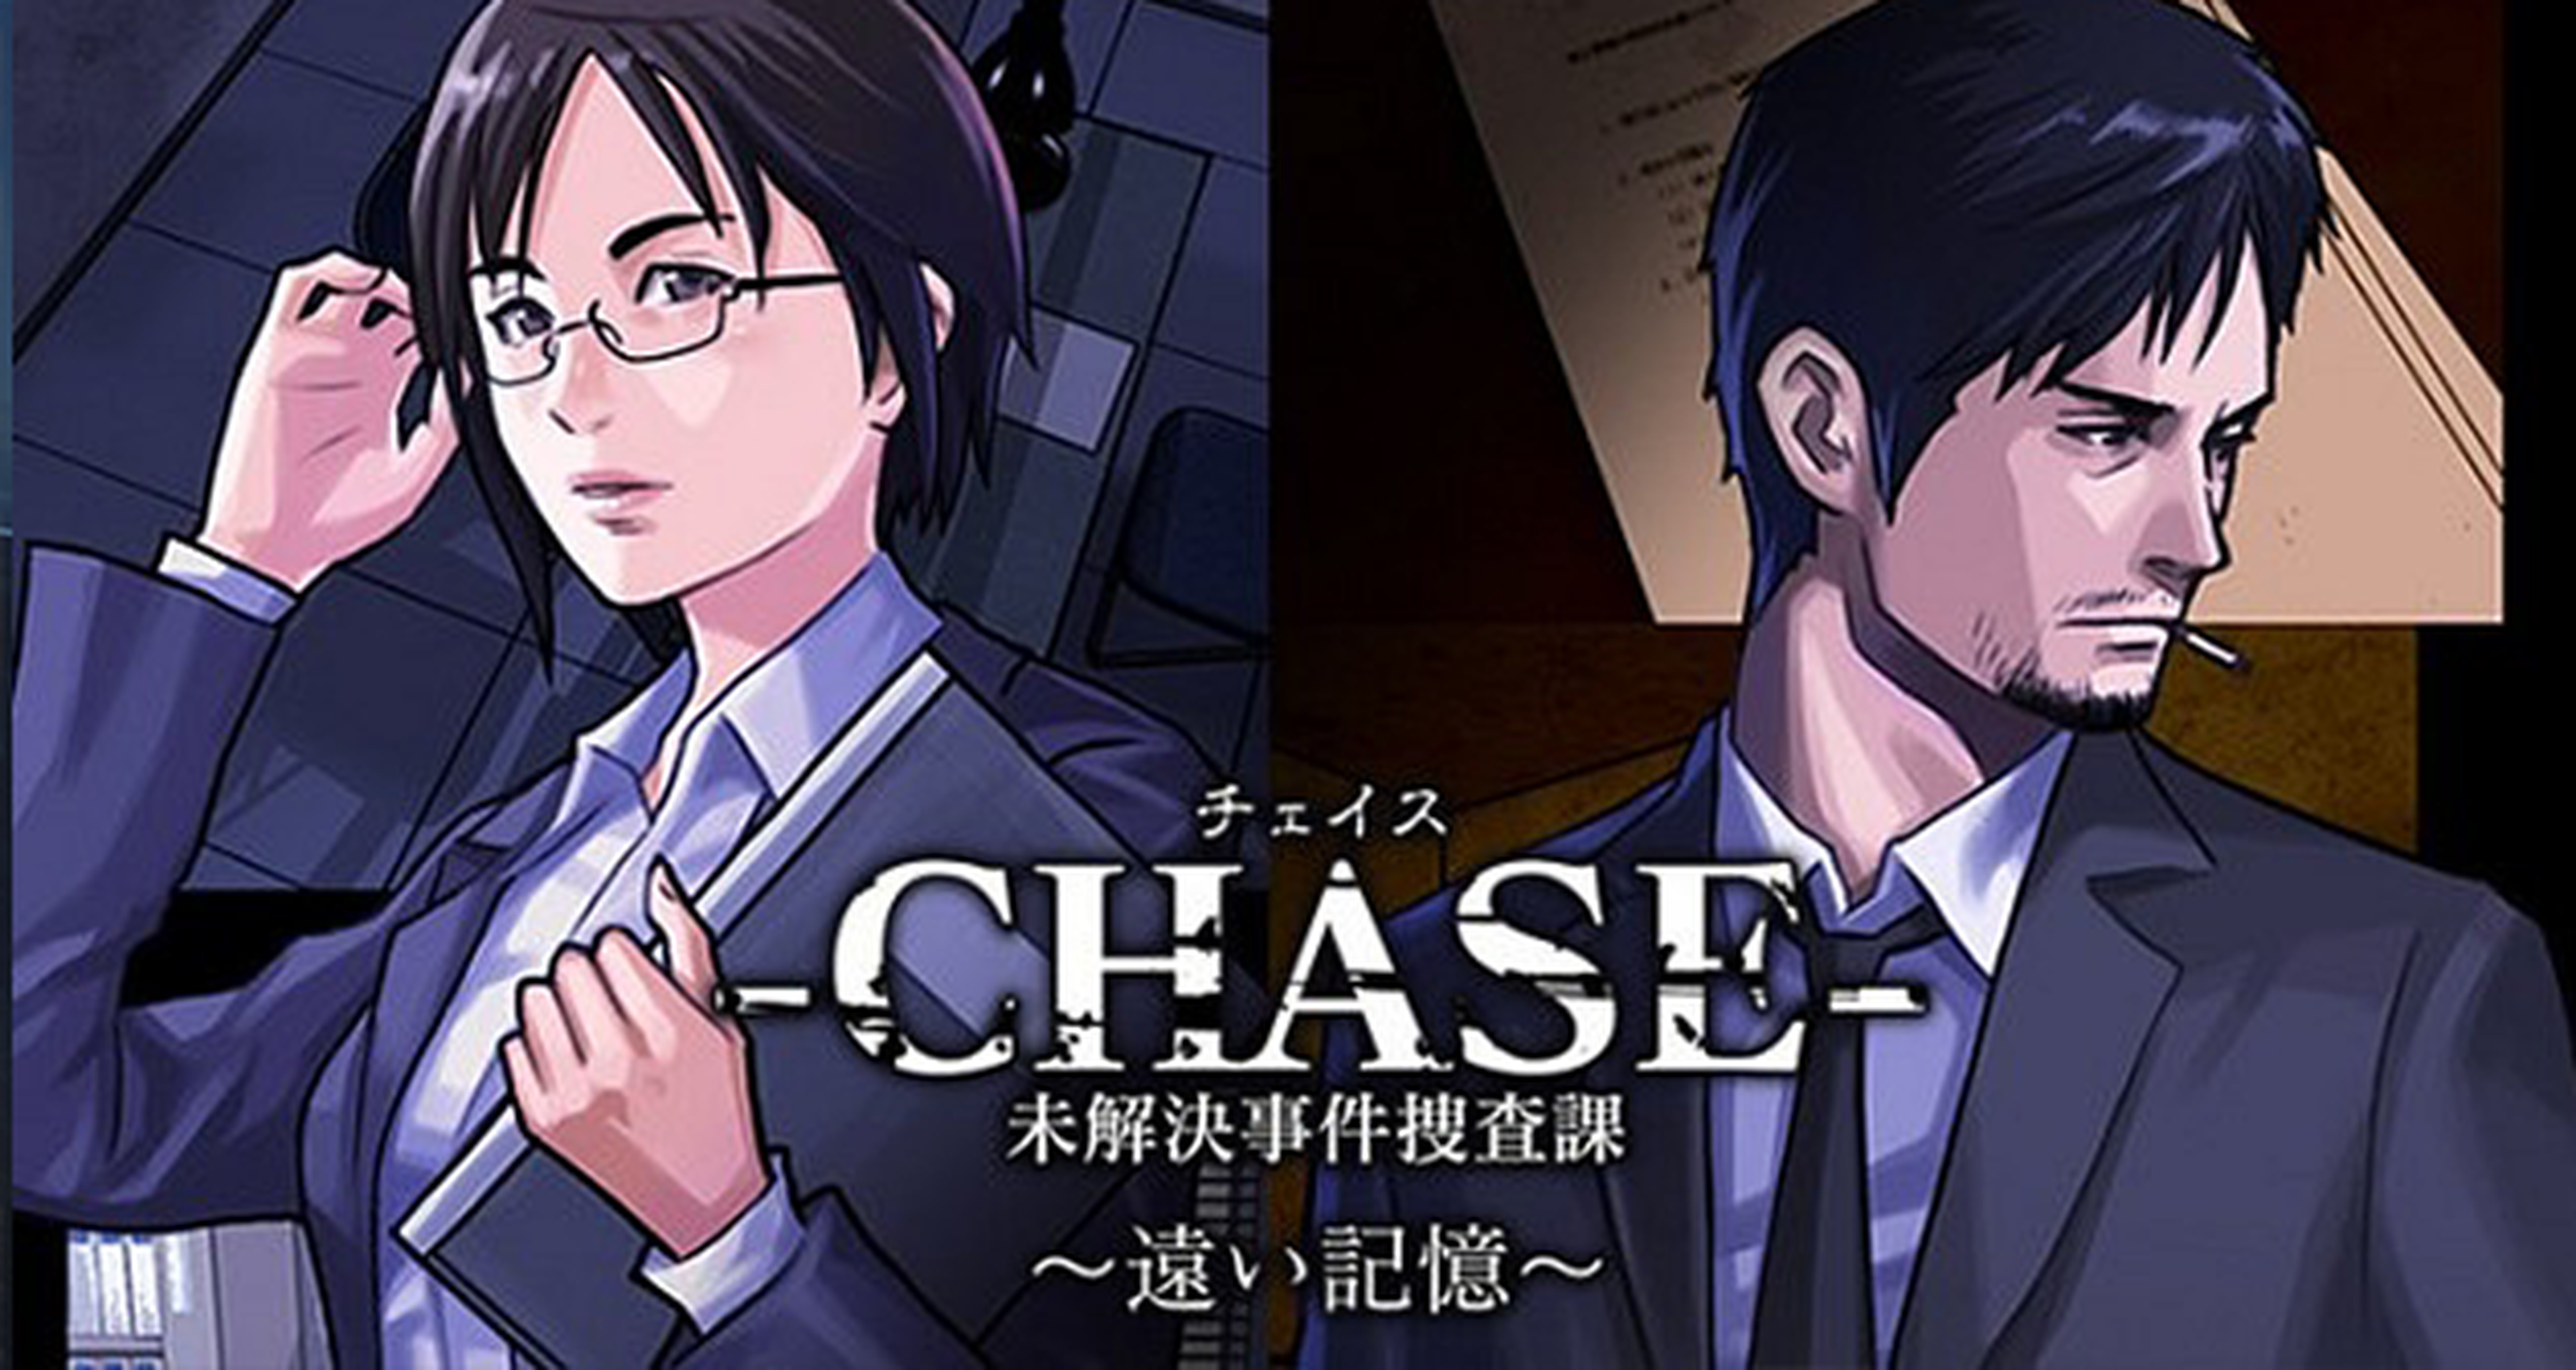 Chase: Unsolved Cases Investigation Division, nueva aventura de los creadores de Hotel Dusk